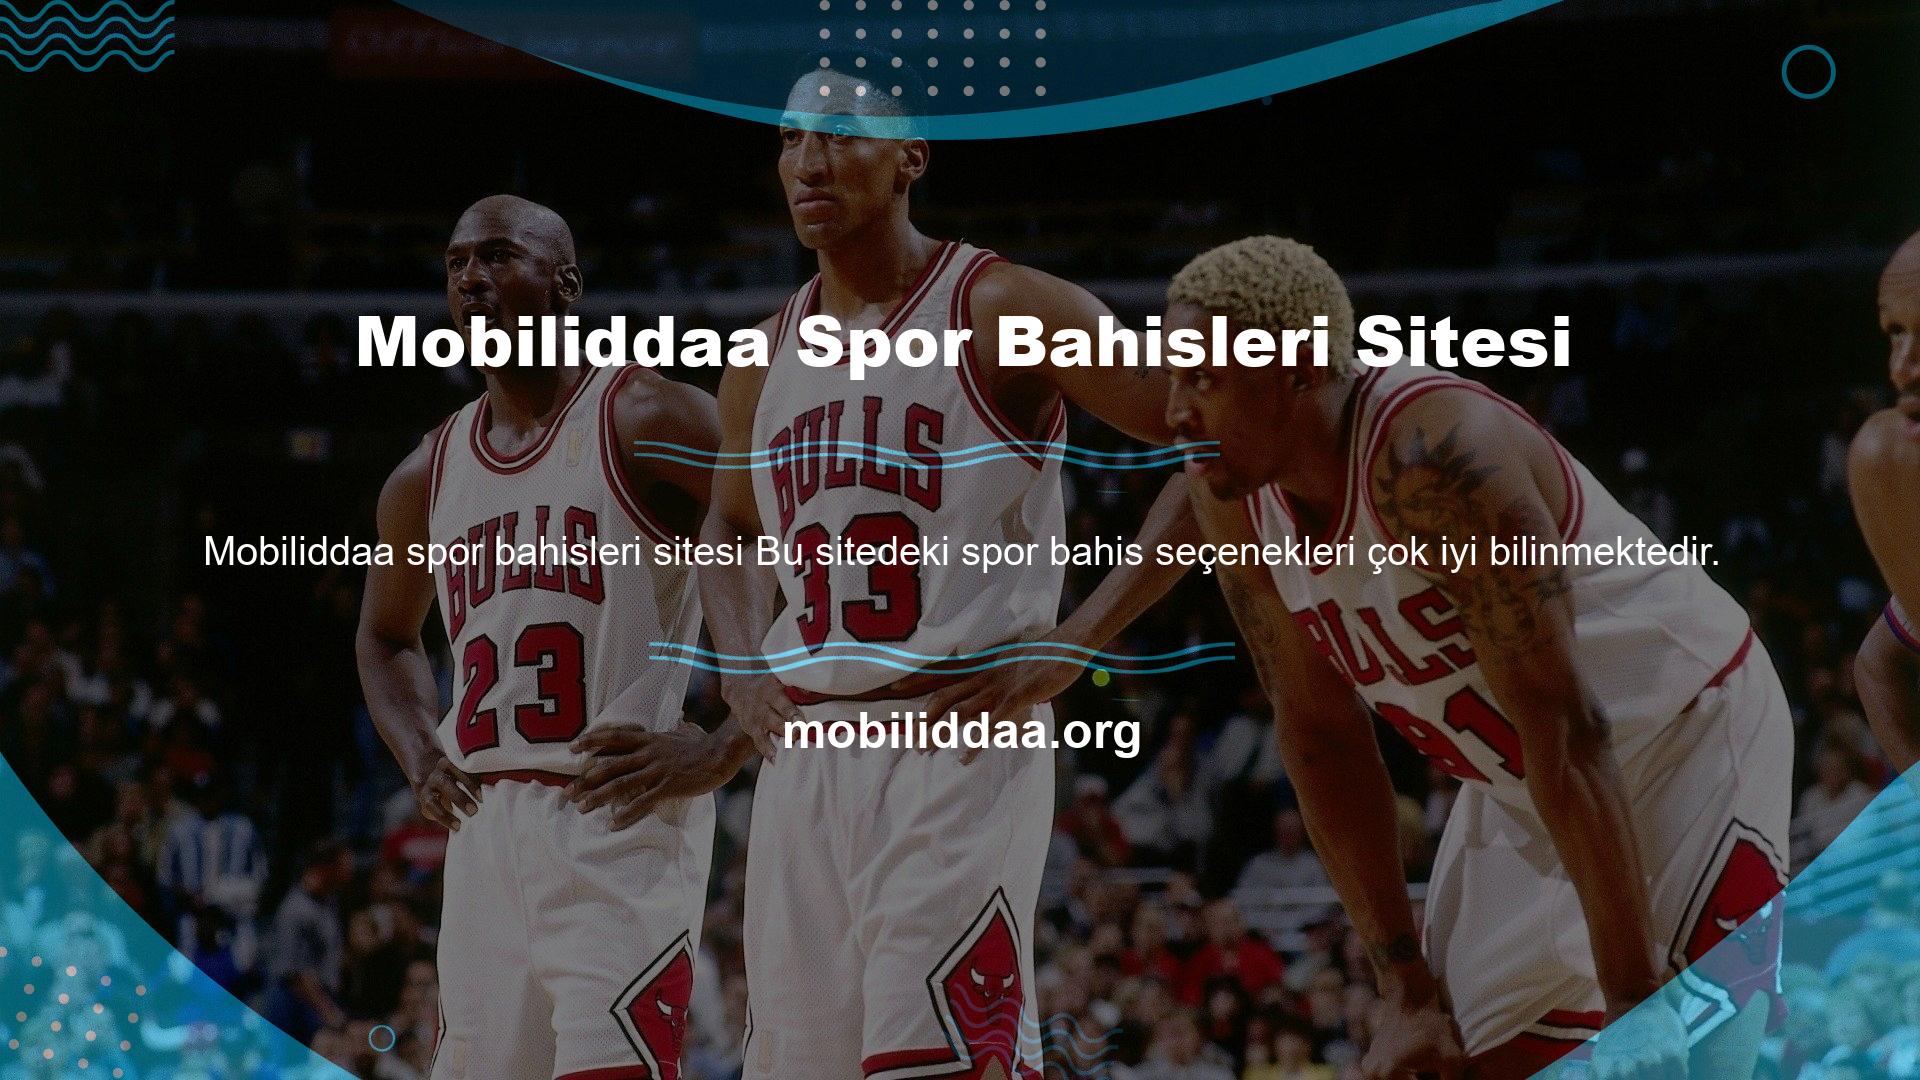 Bahis sitesinde spor bahislerine ulaşmak için sitenin ana sayfasının üst kısmındaki menü çubuğunda spor bahisleri seçeneğine tıklamak gerekmektedir